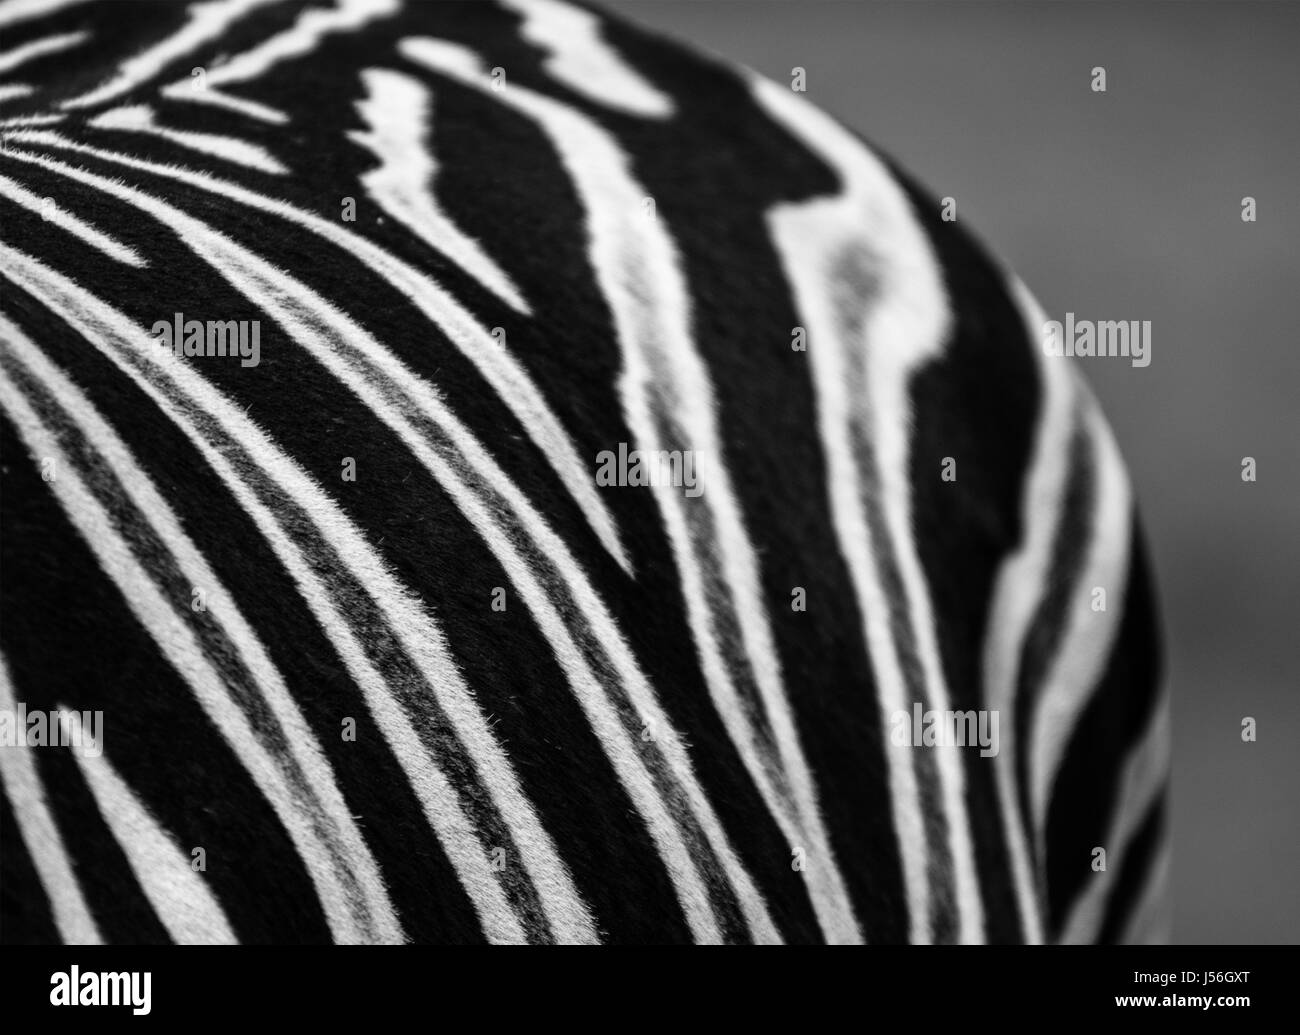 Zebra in Contrast Stock Photo